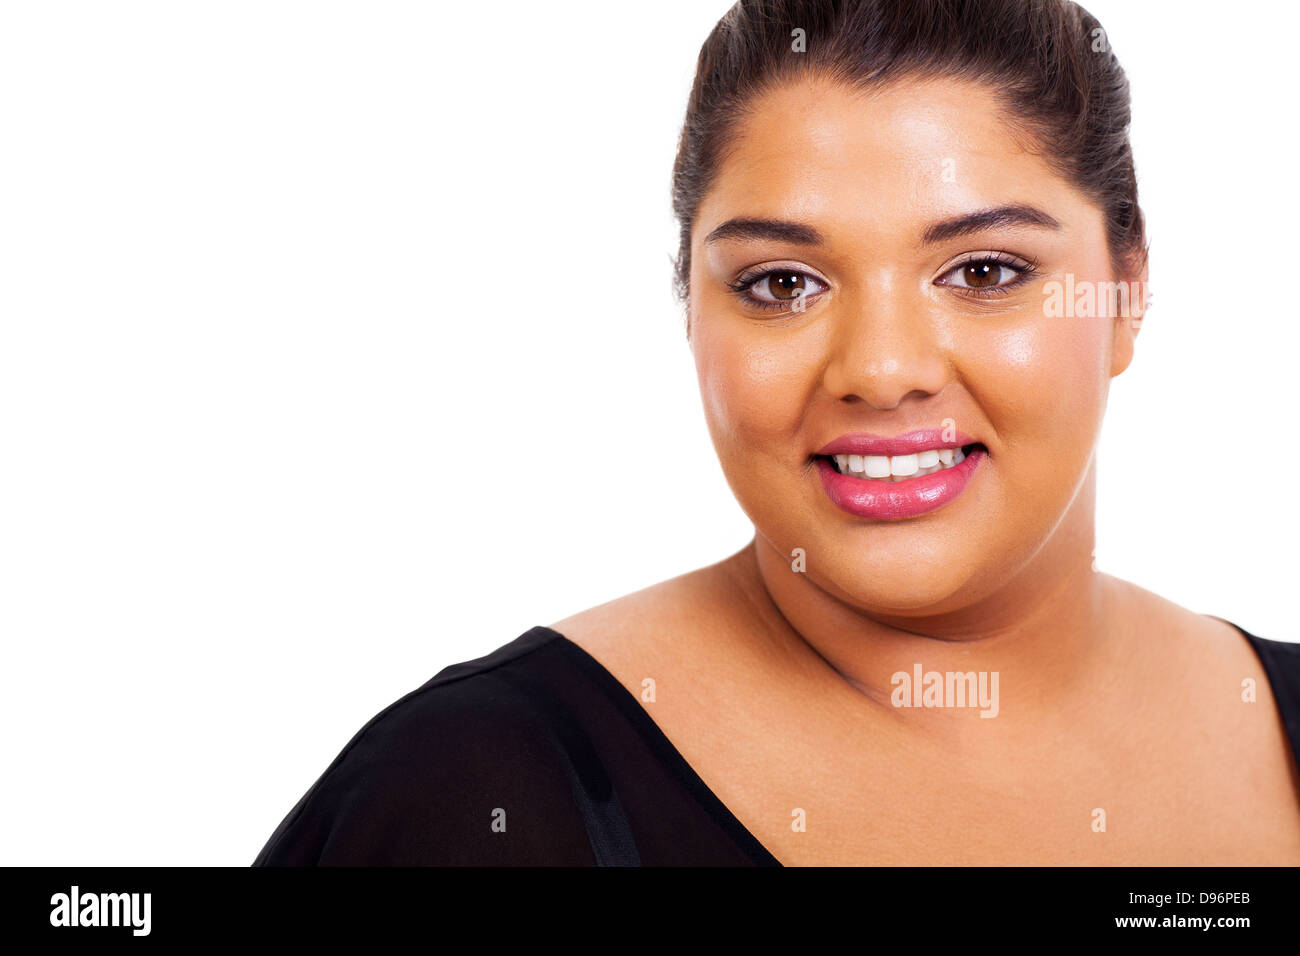 lovely big girl closeup headshot on white background Stock Photo